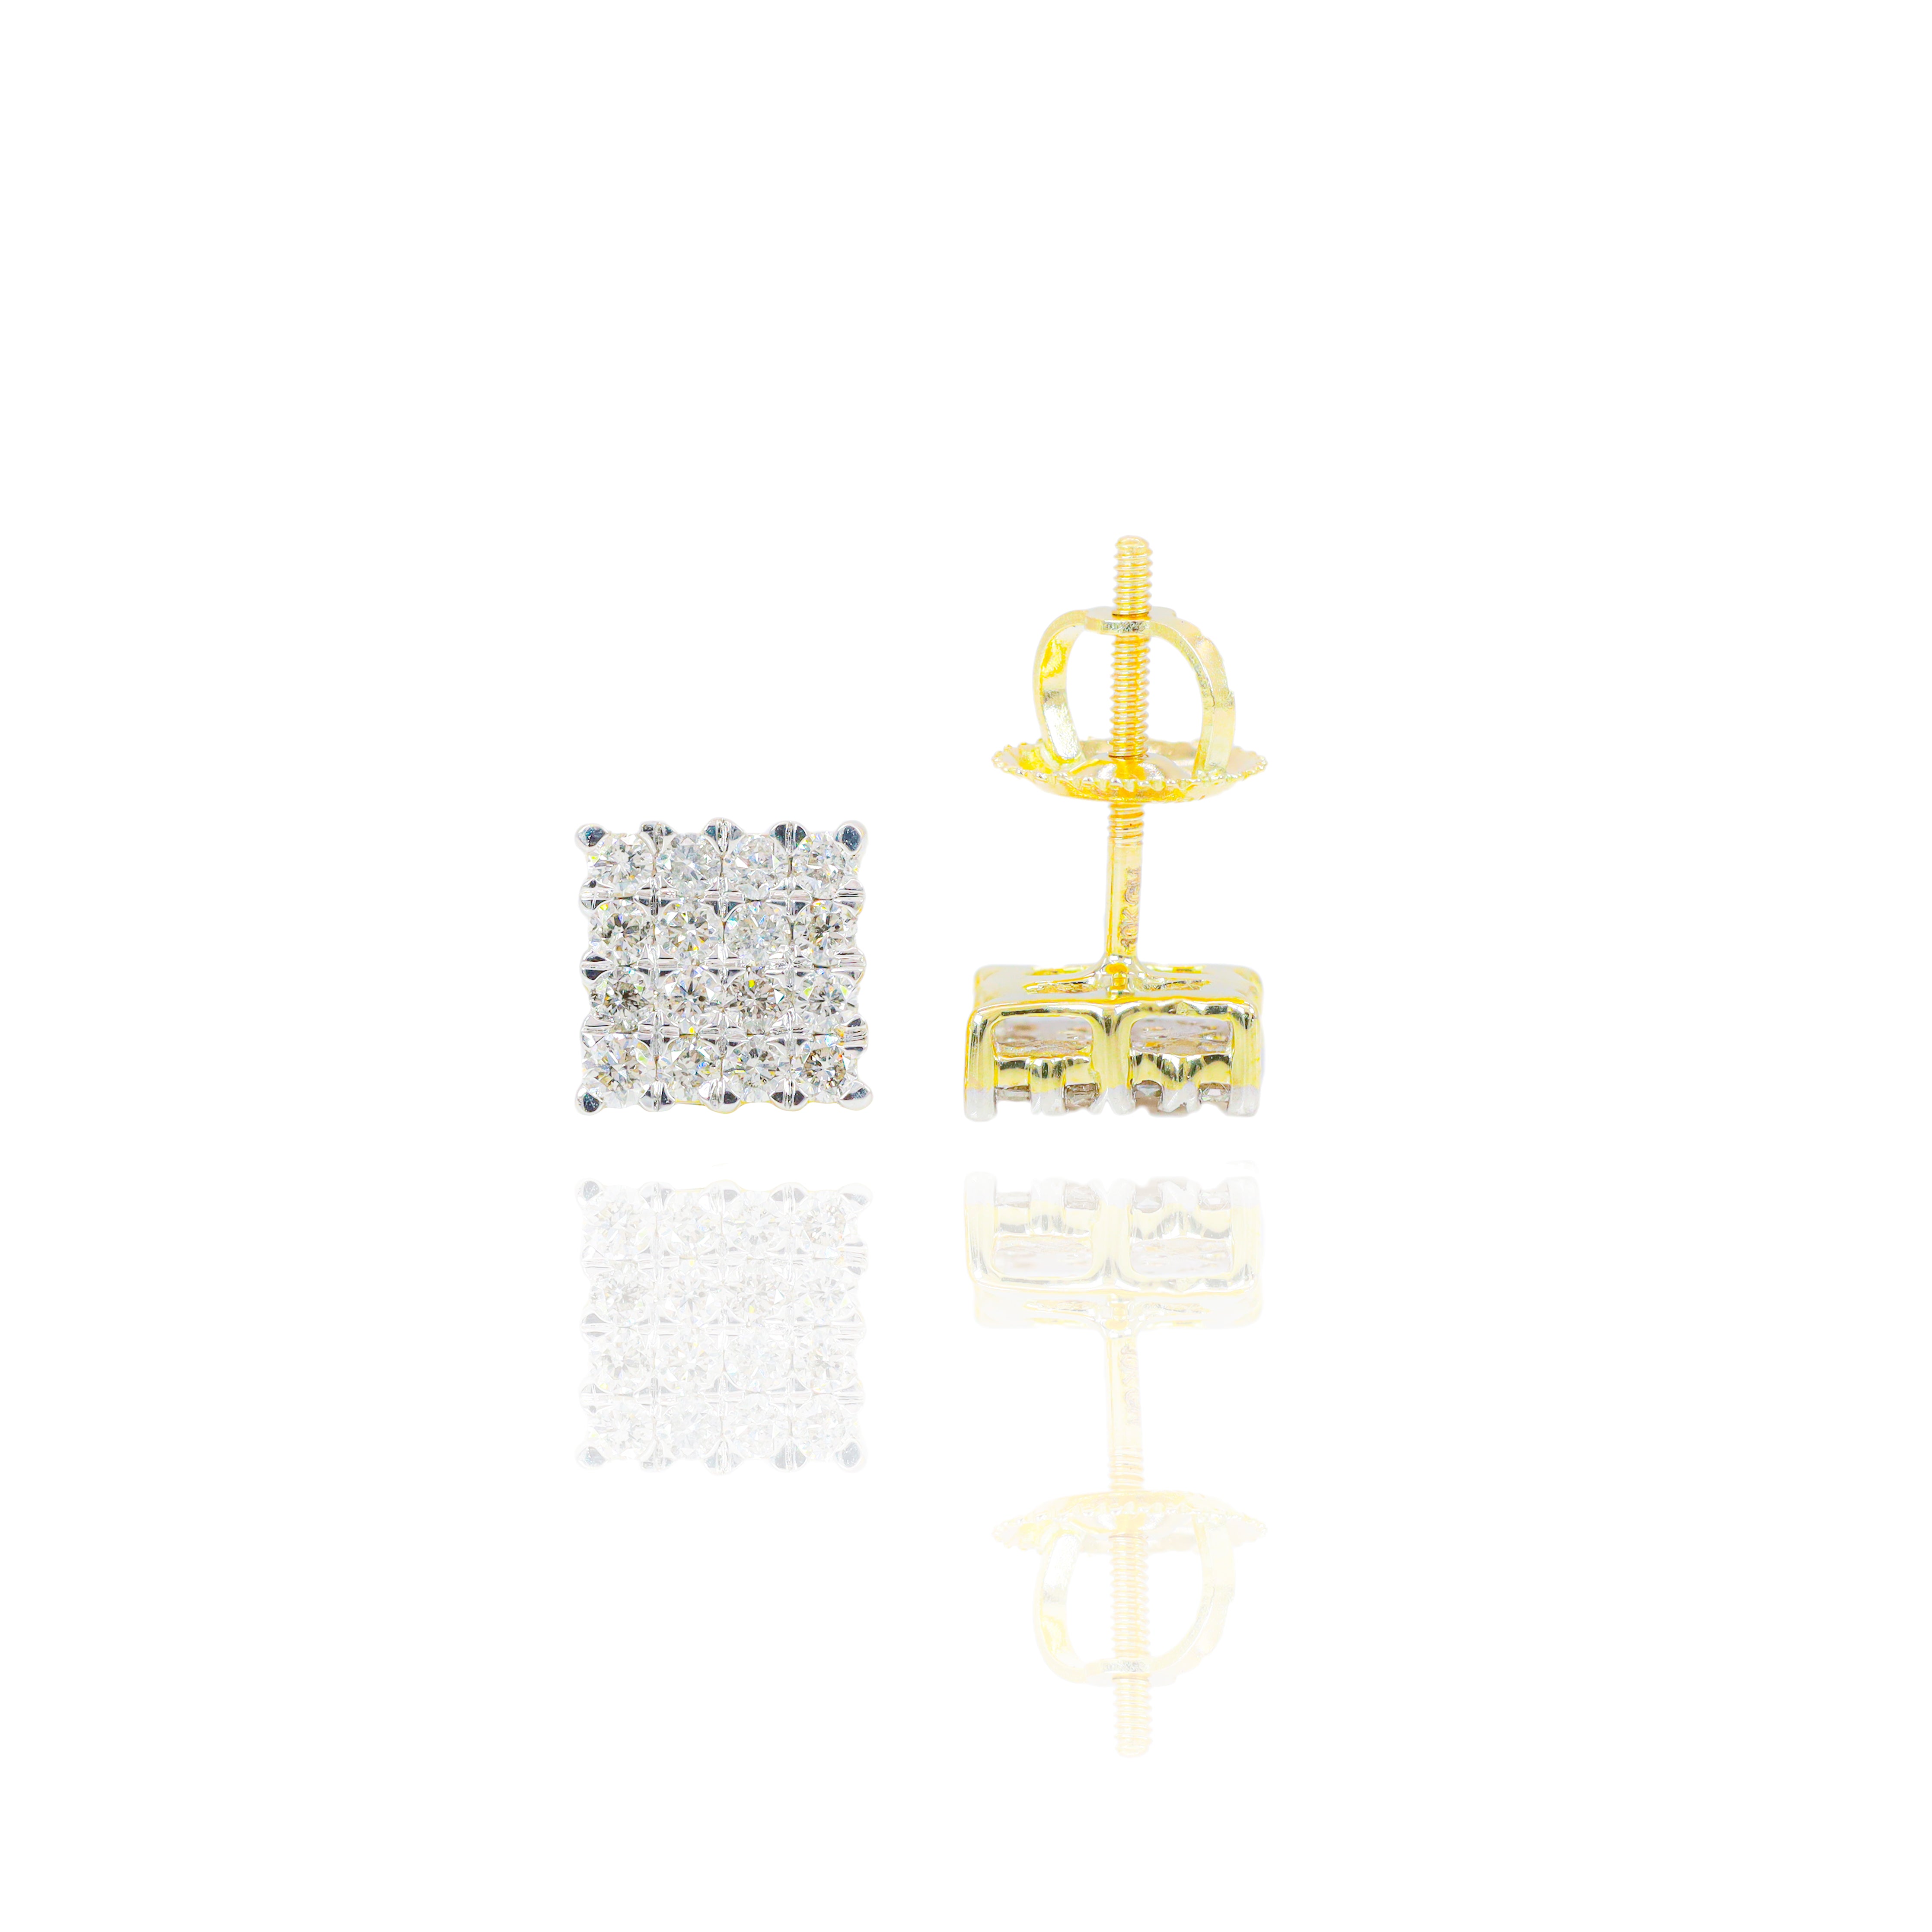 Square Micro Pave Straight Set Diamond Earrings